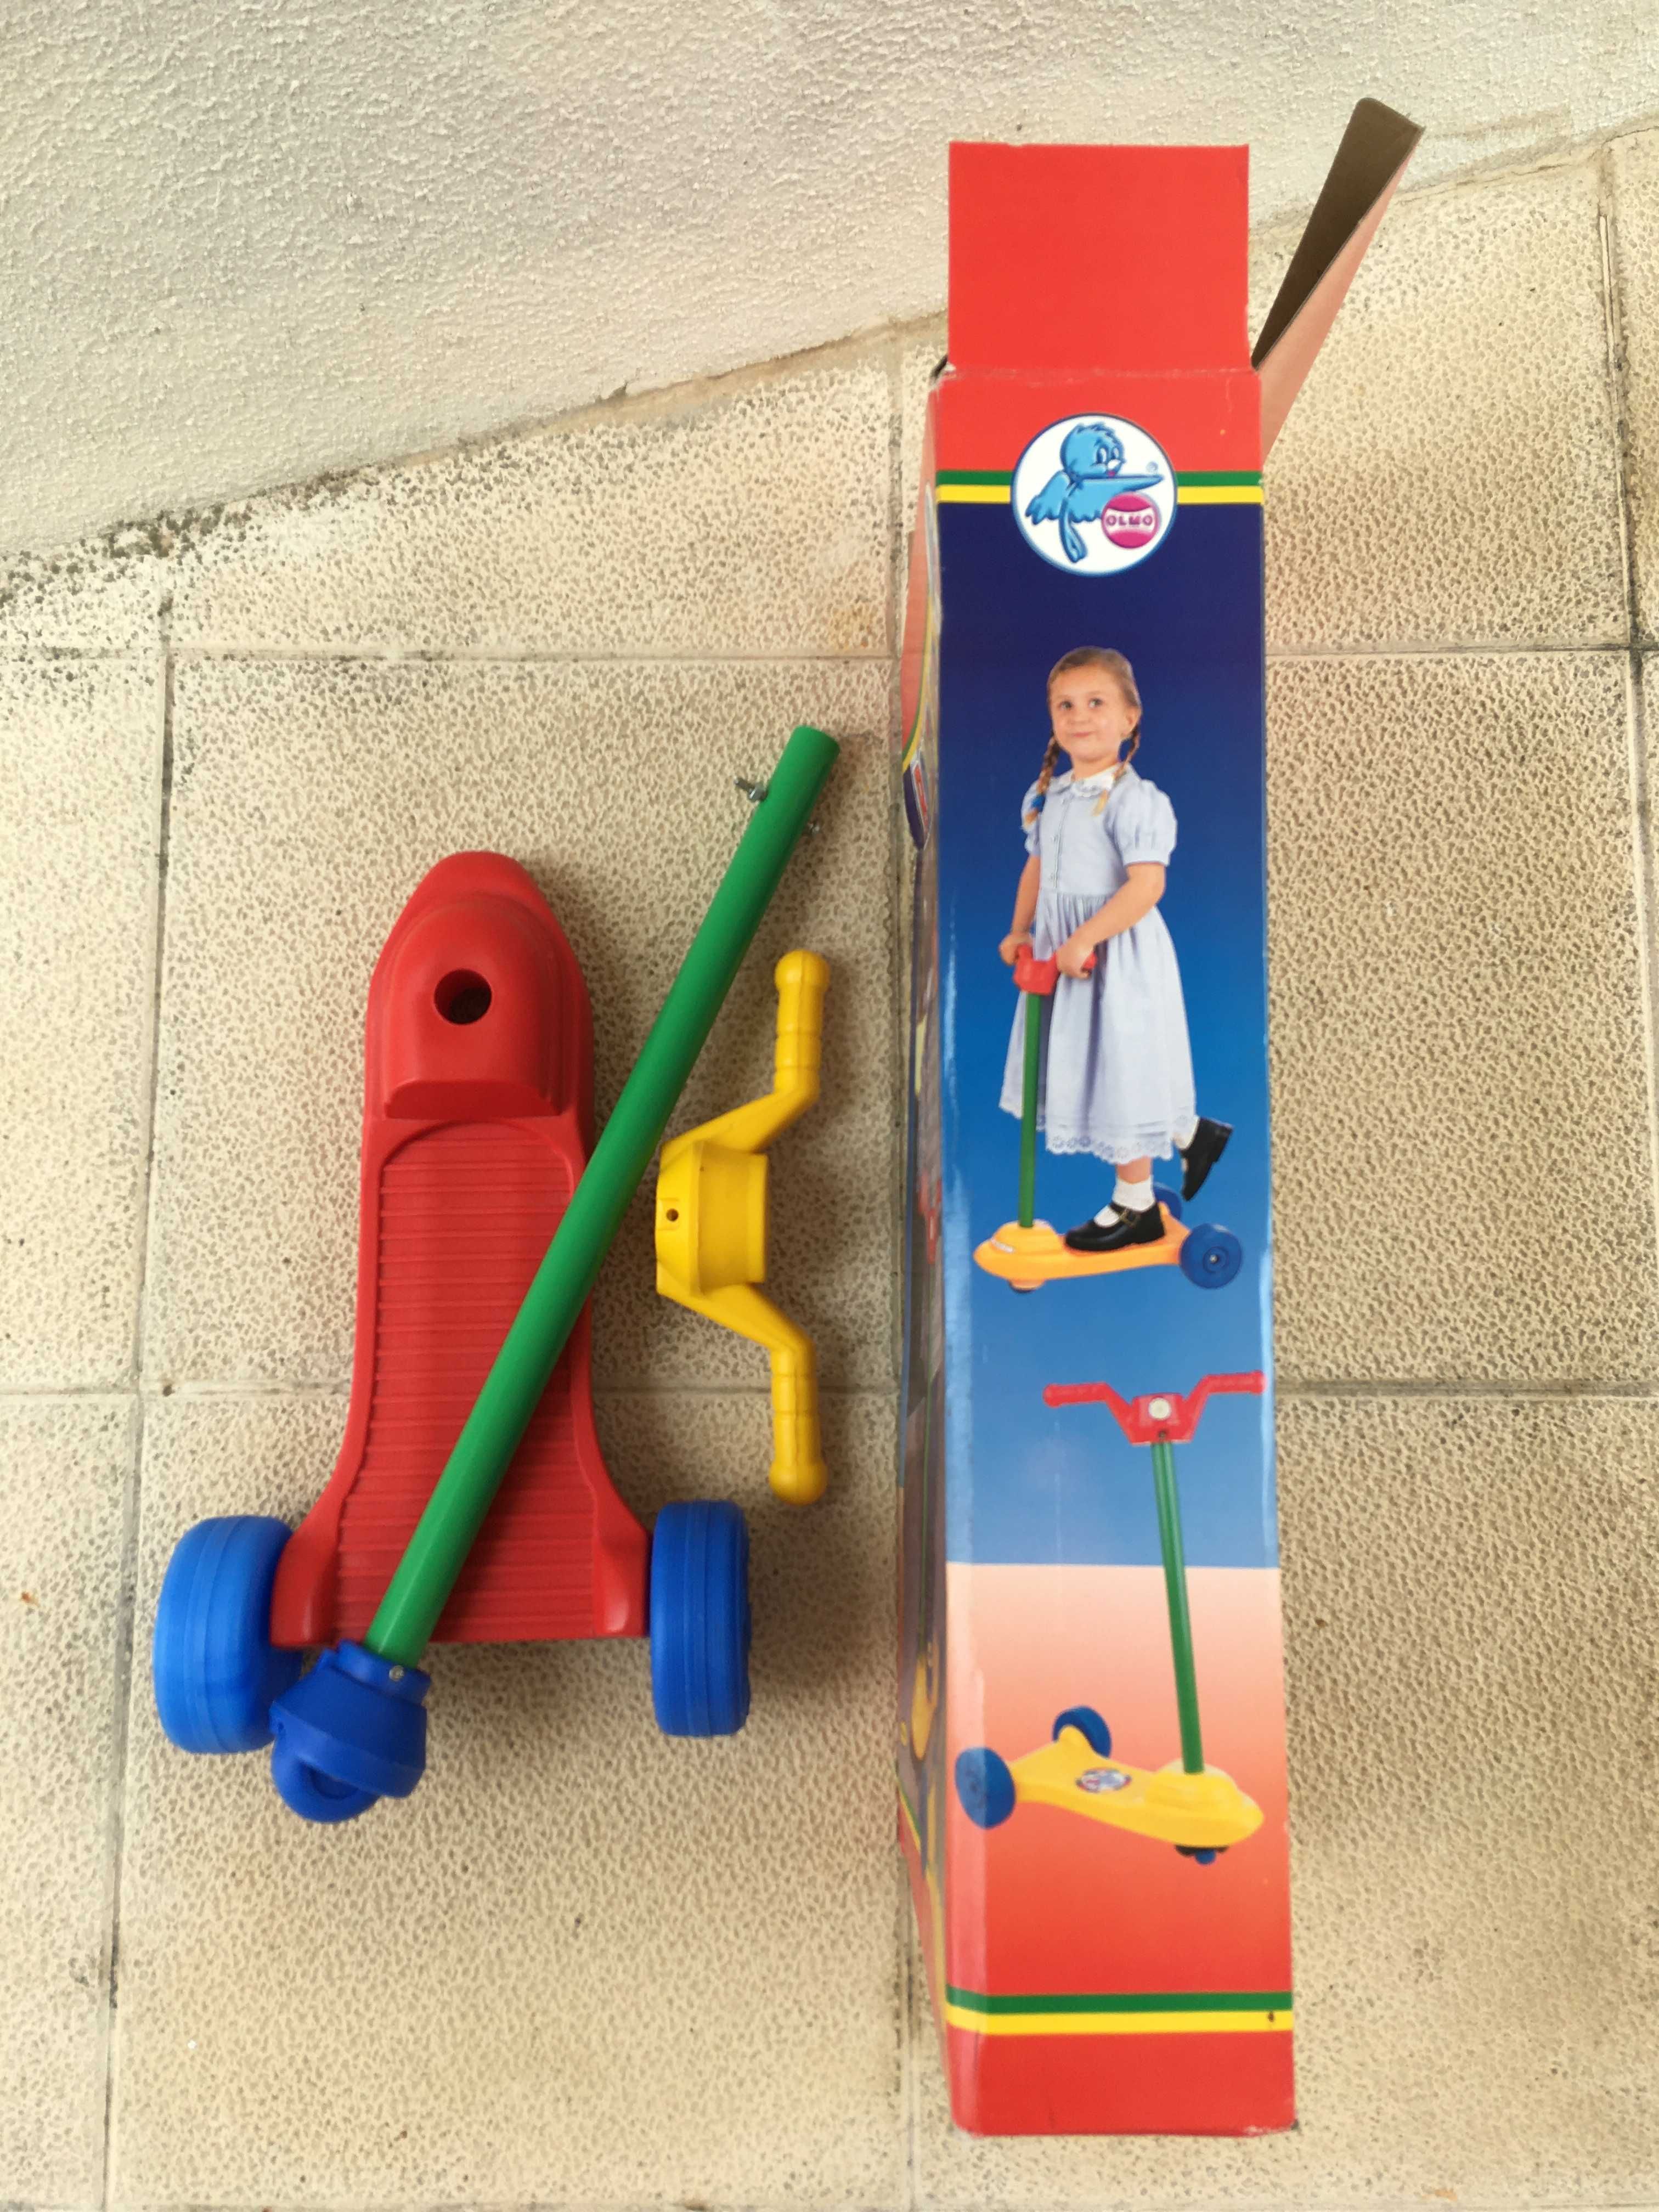 Brinquedo Trotinete colorida de Criança (Menino ou Menina)